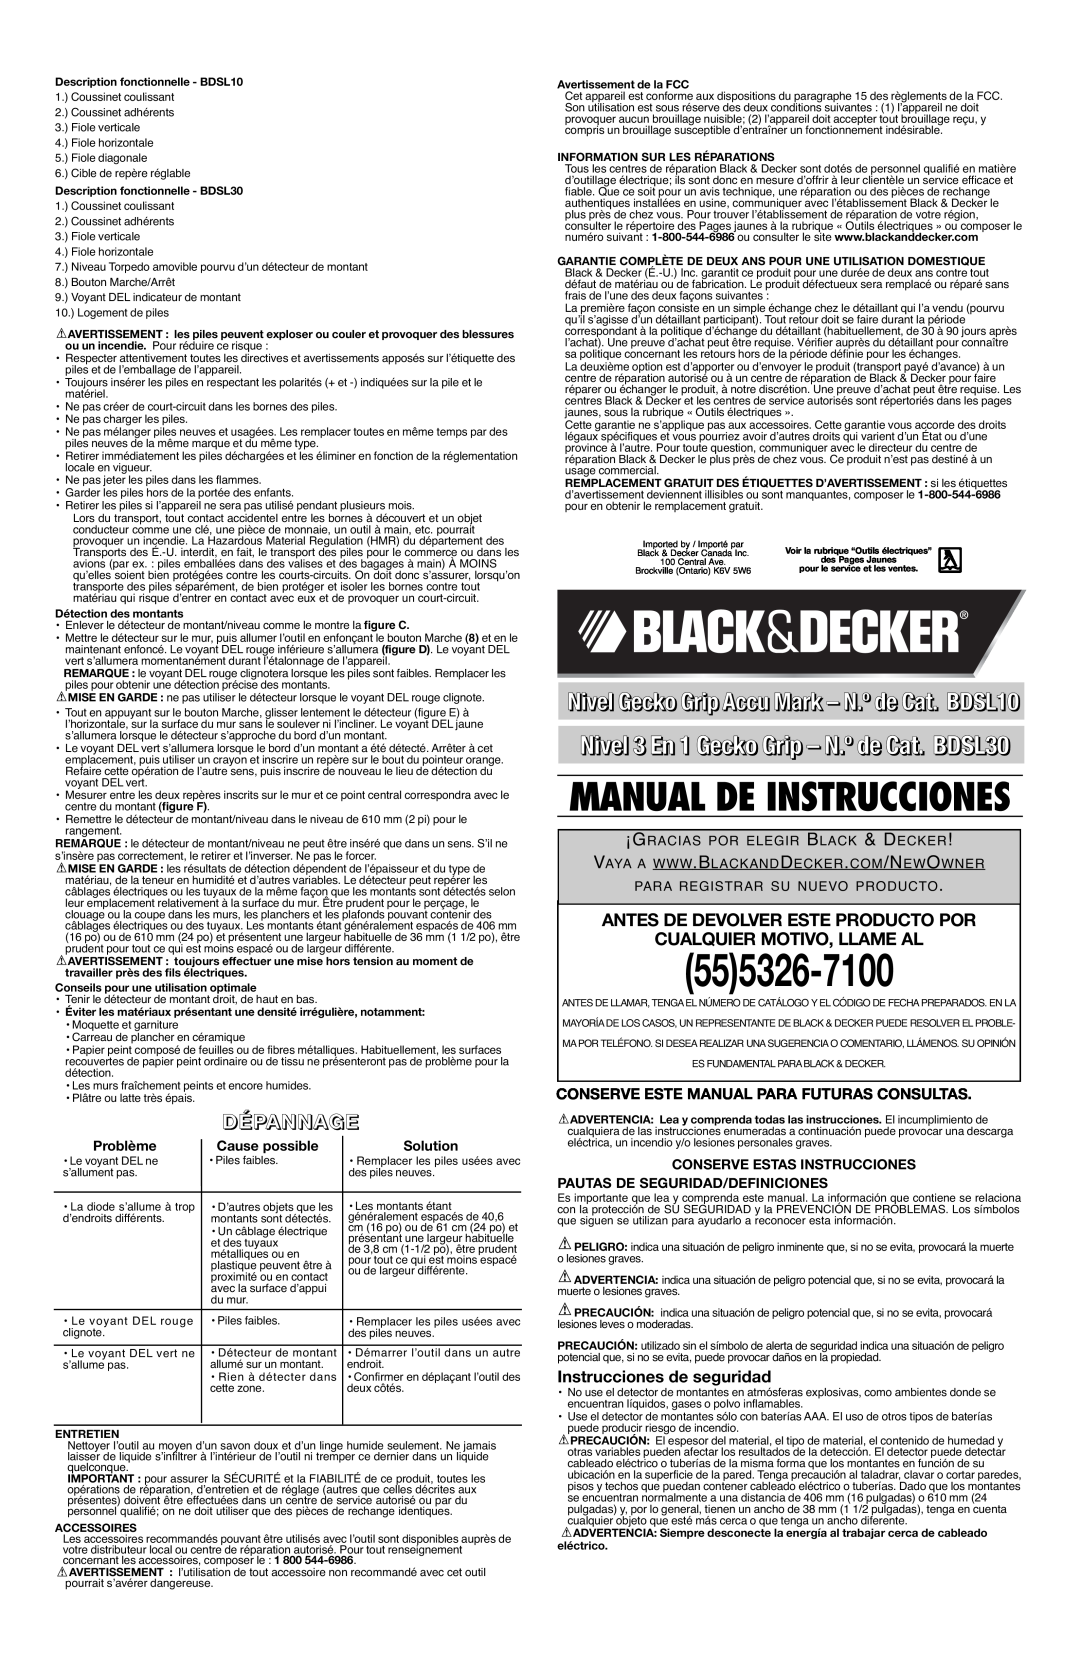 Black & Decker BDSL10 555326-7100, Nivel 3 En 1 Gecko Grip - N.º de Cat. BDSL30, Dépannage, Cualquier Motivo, Llame Al 